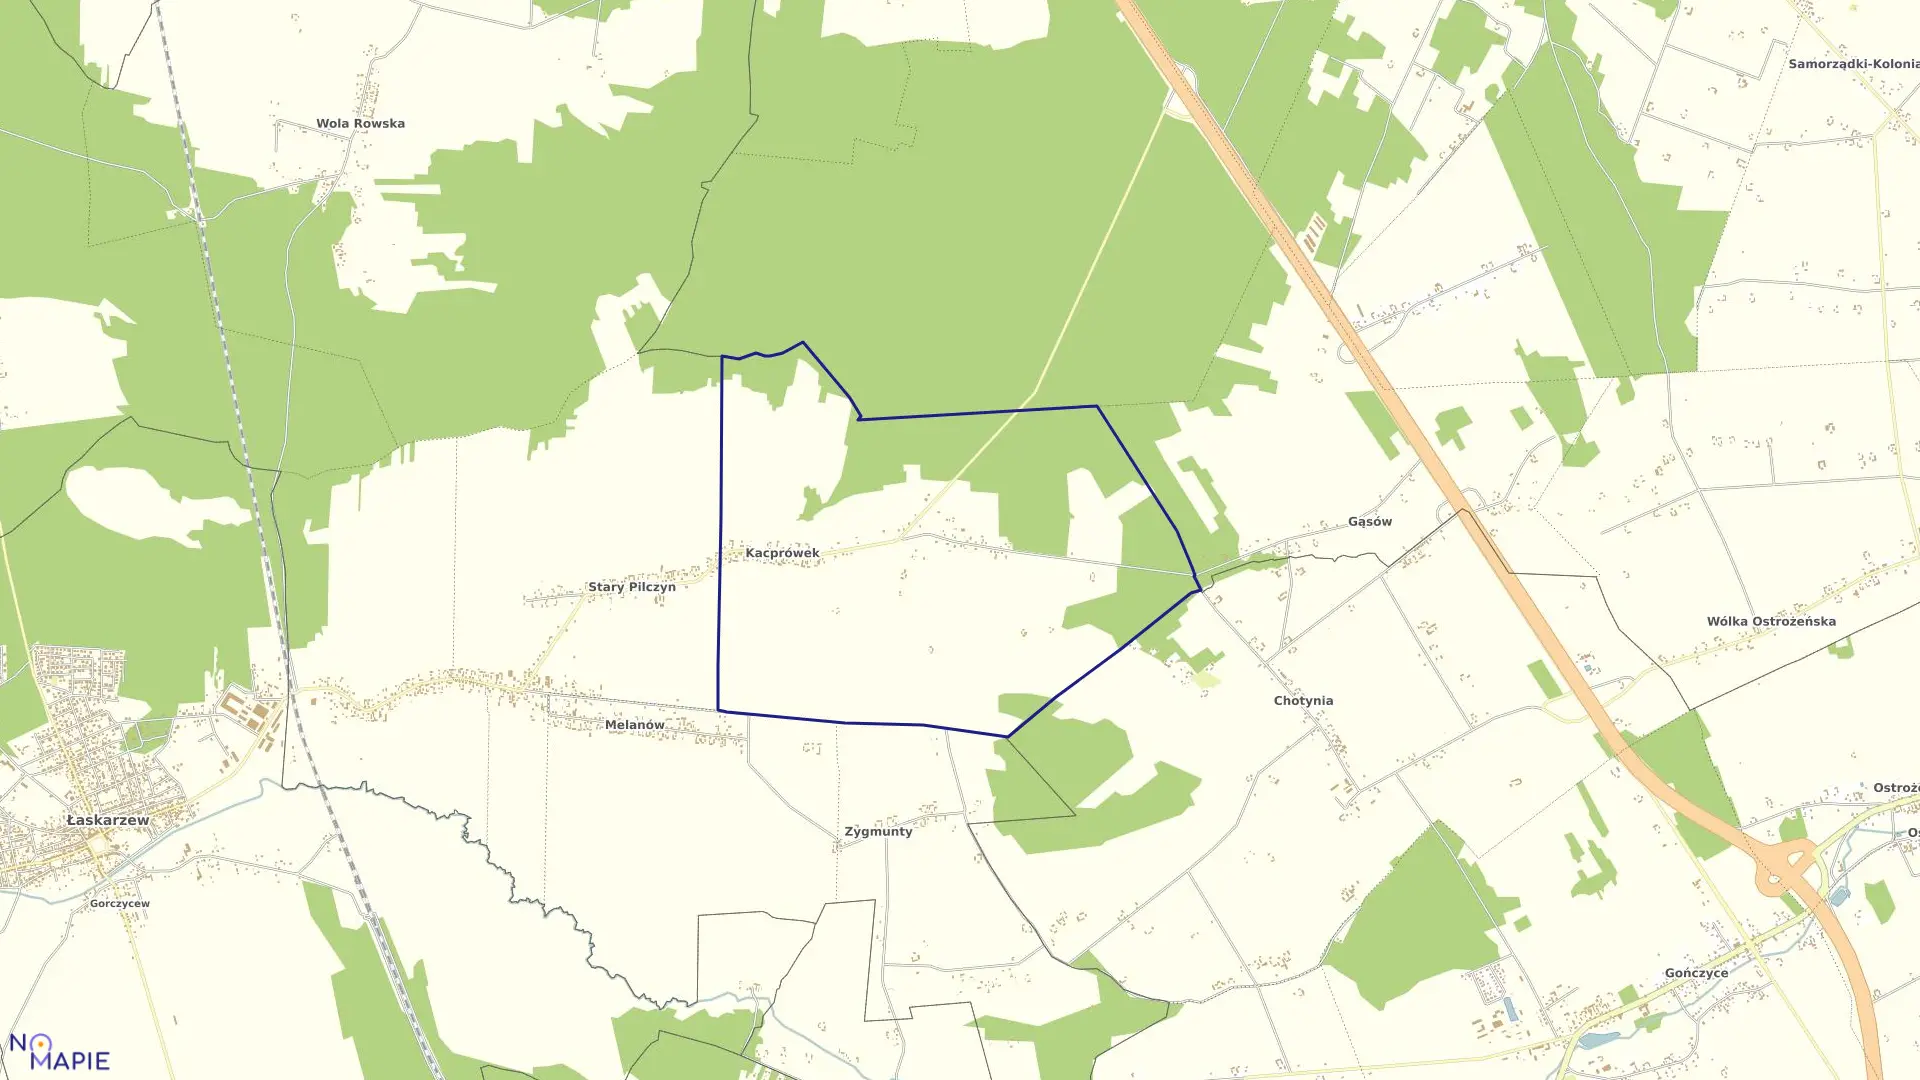 Mapa obrębu KACPRÓWEK w gminie Łaskarzew